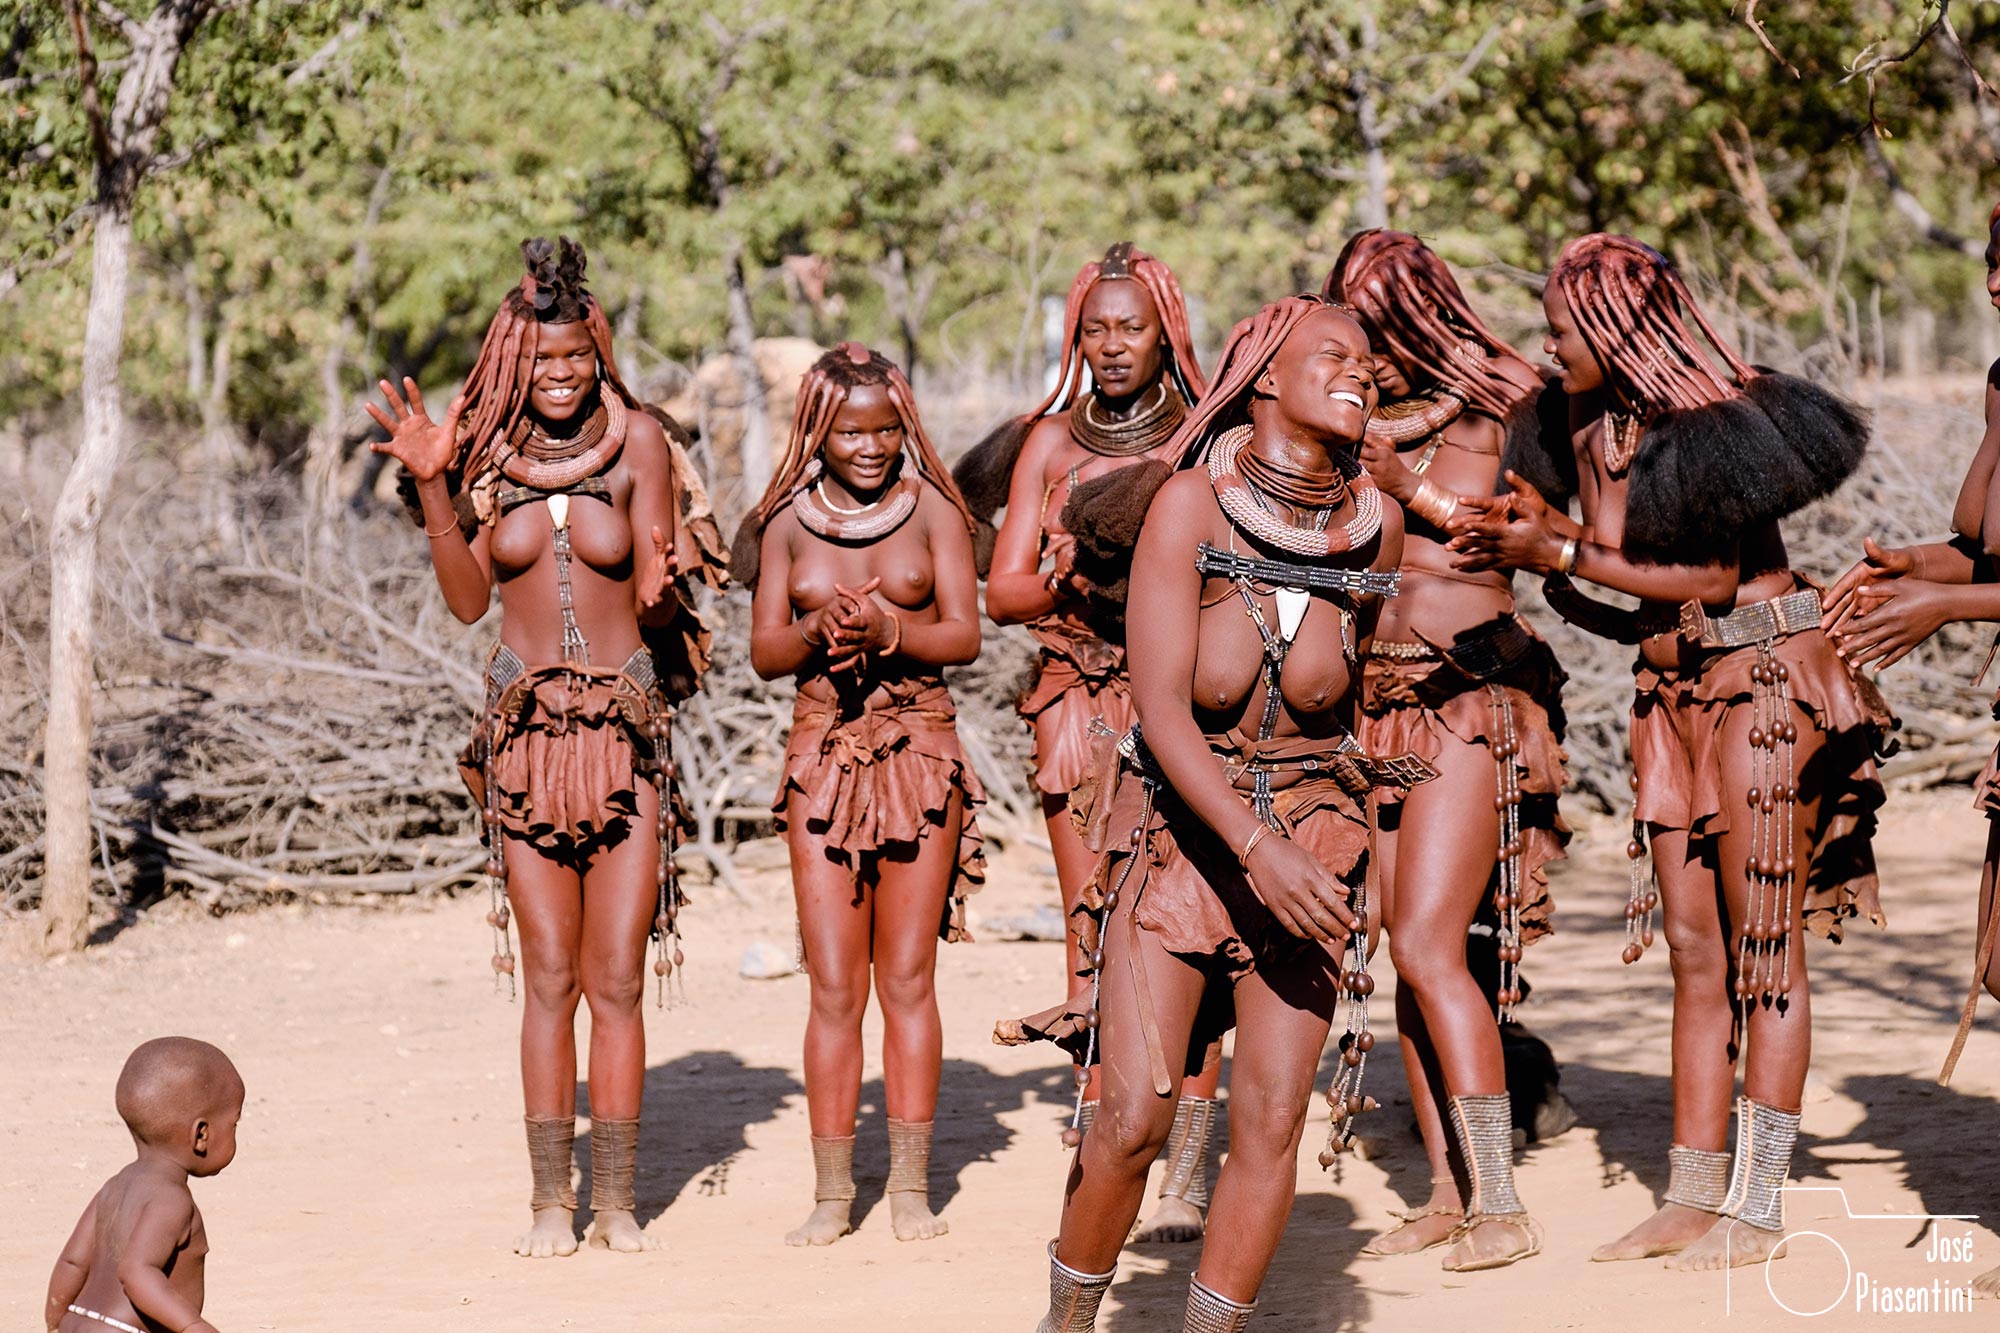 Himba dancing